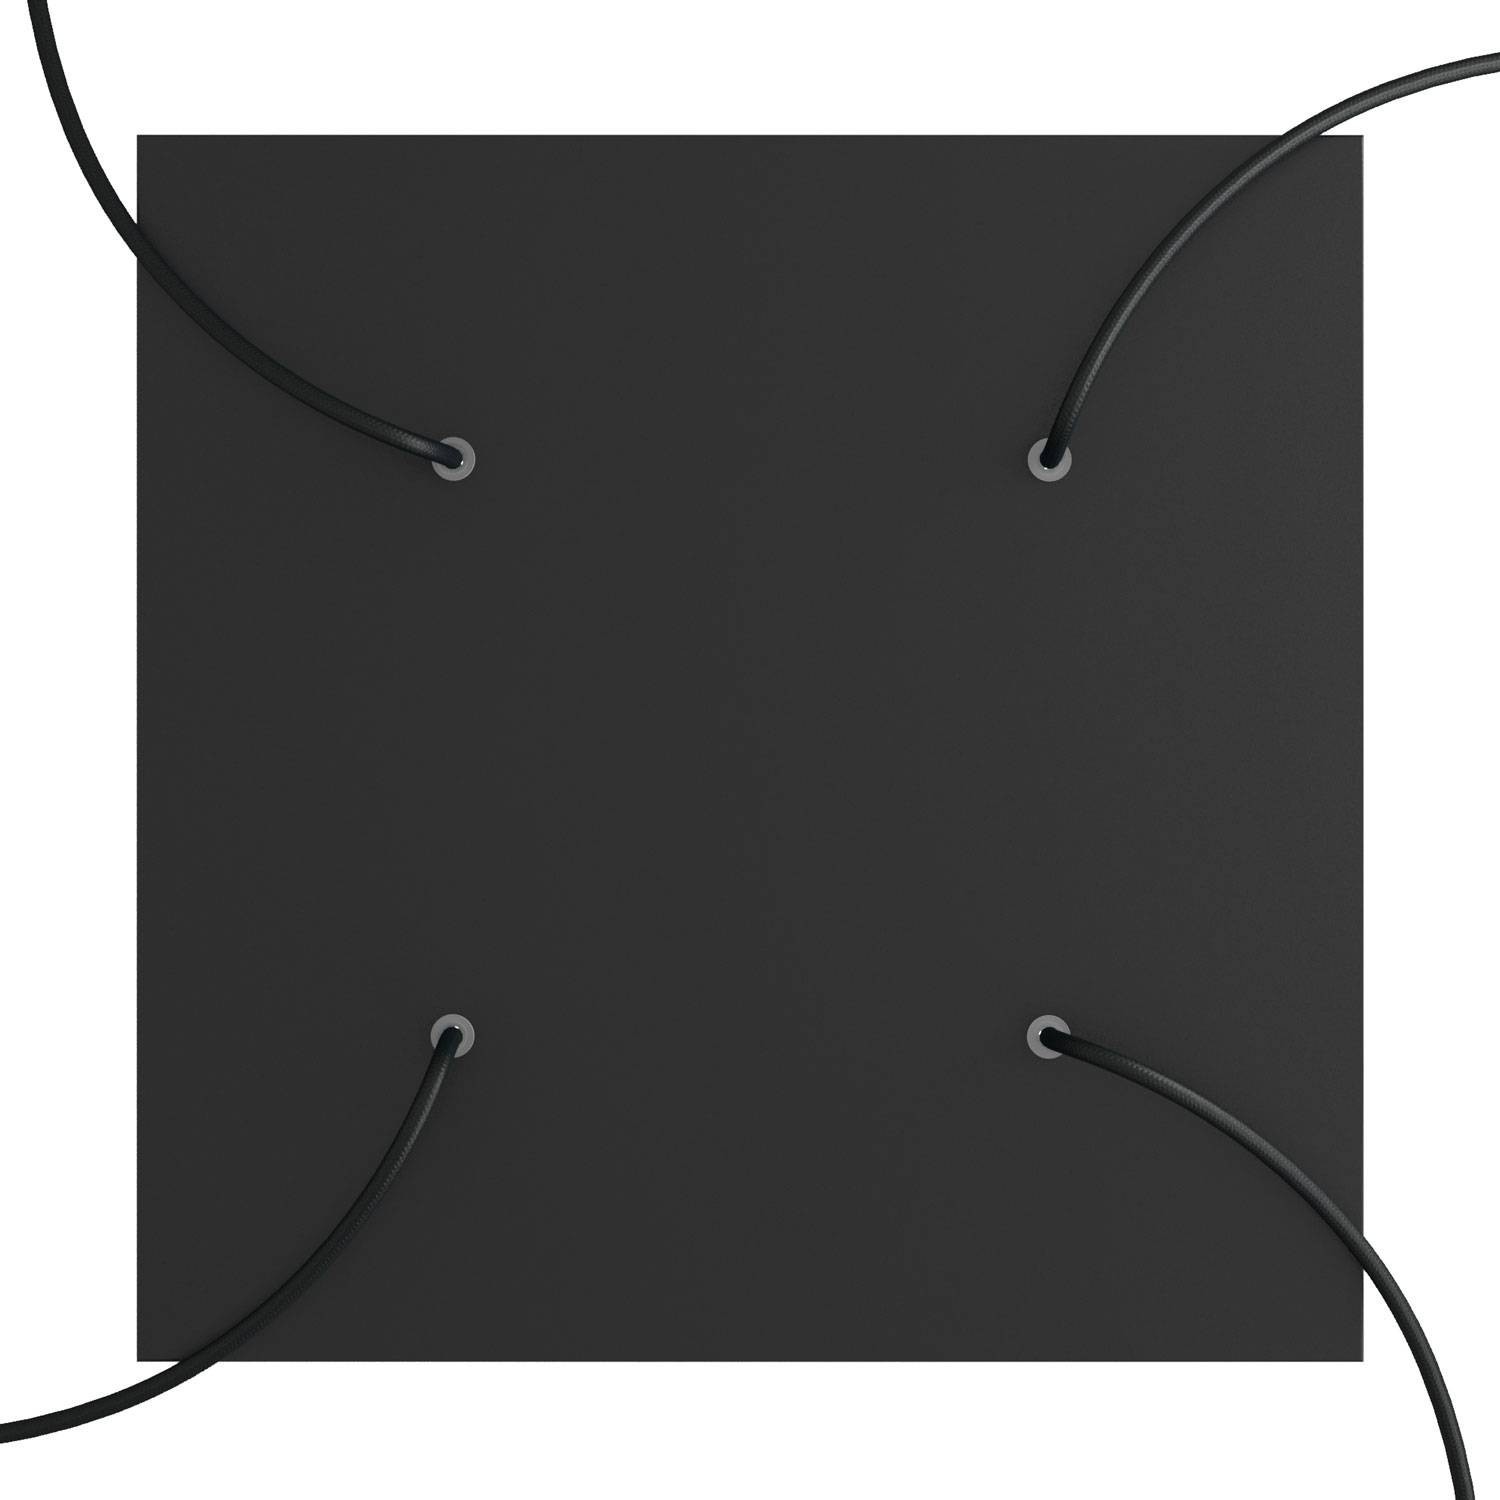 Komplett 400mm takkopp Rose-One System kvadrat - 4 hål og 4 sidehål